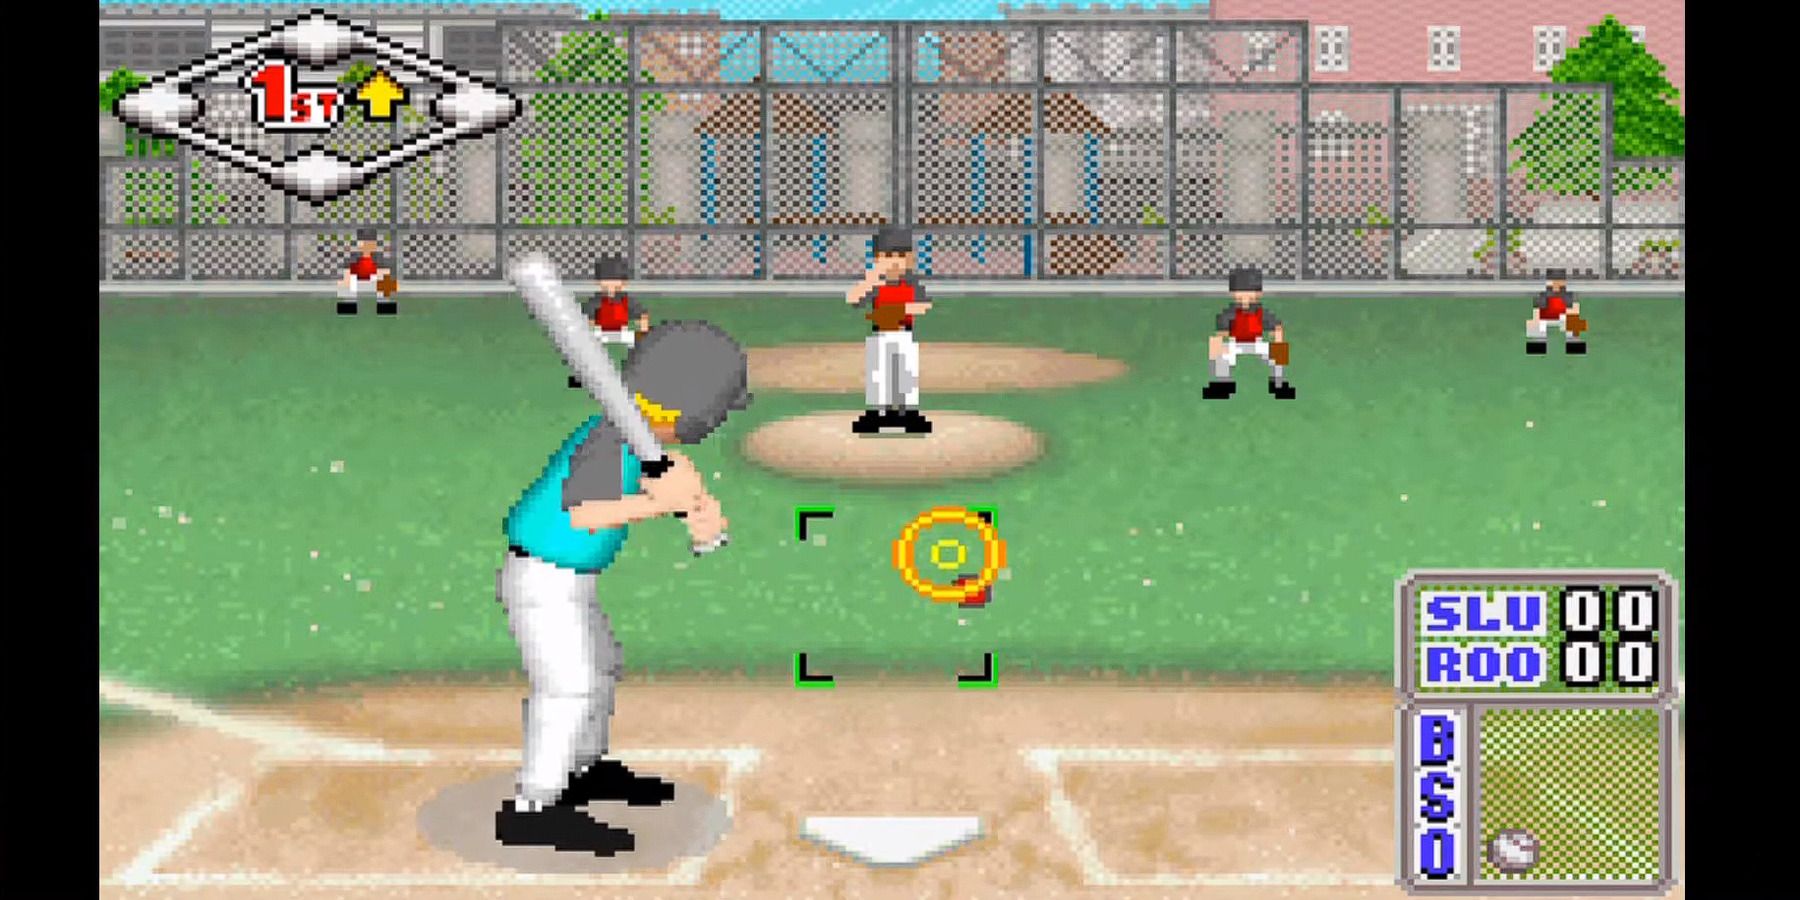 Little League Baseball 2002 GameBoy Advance